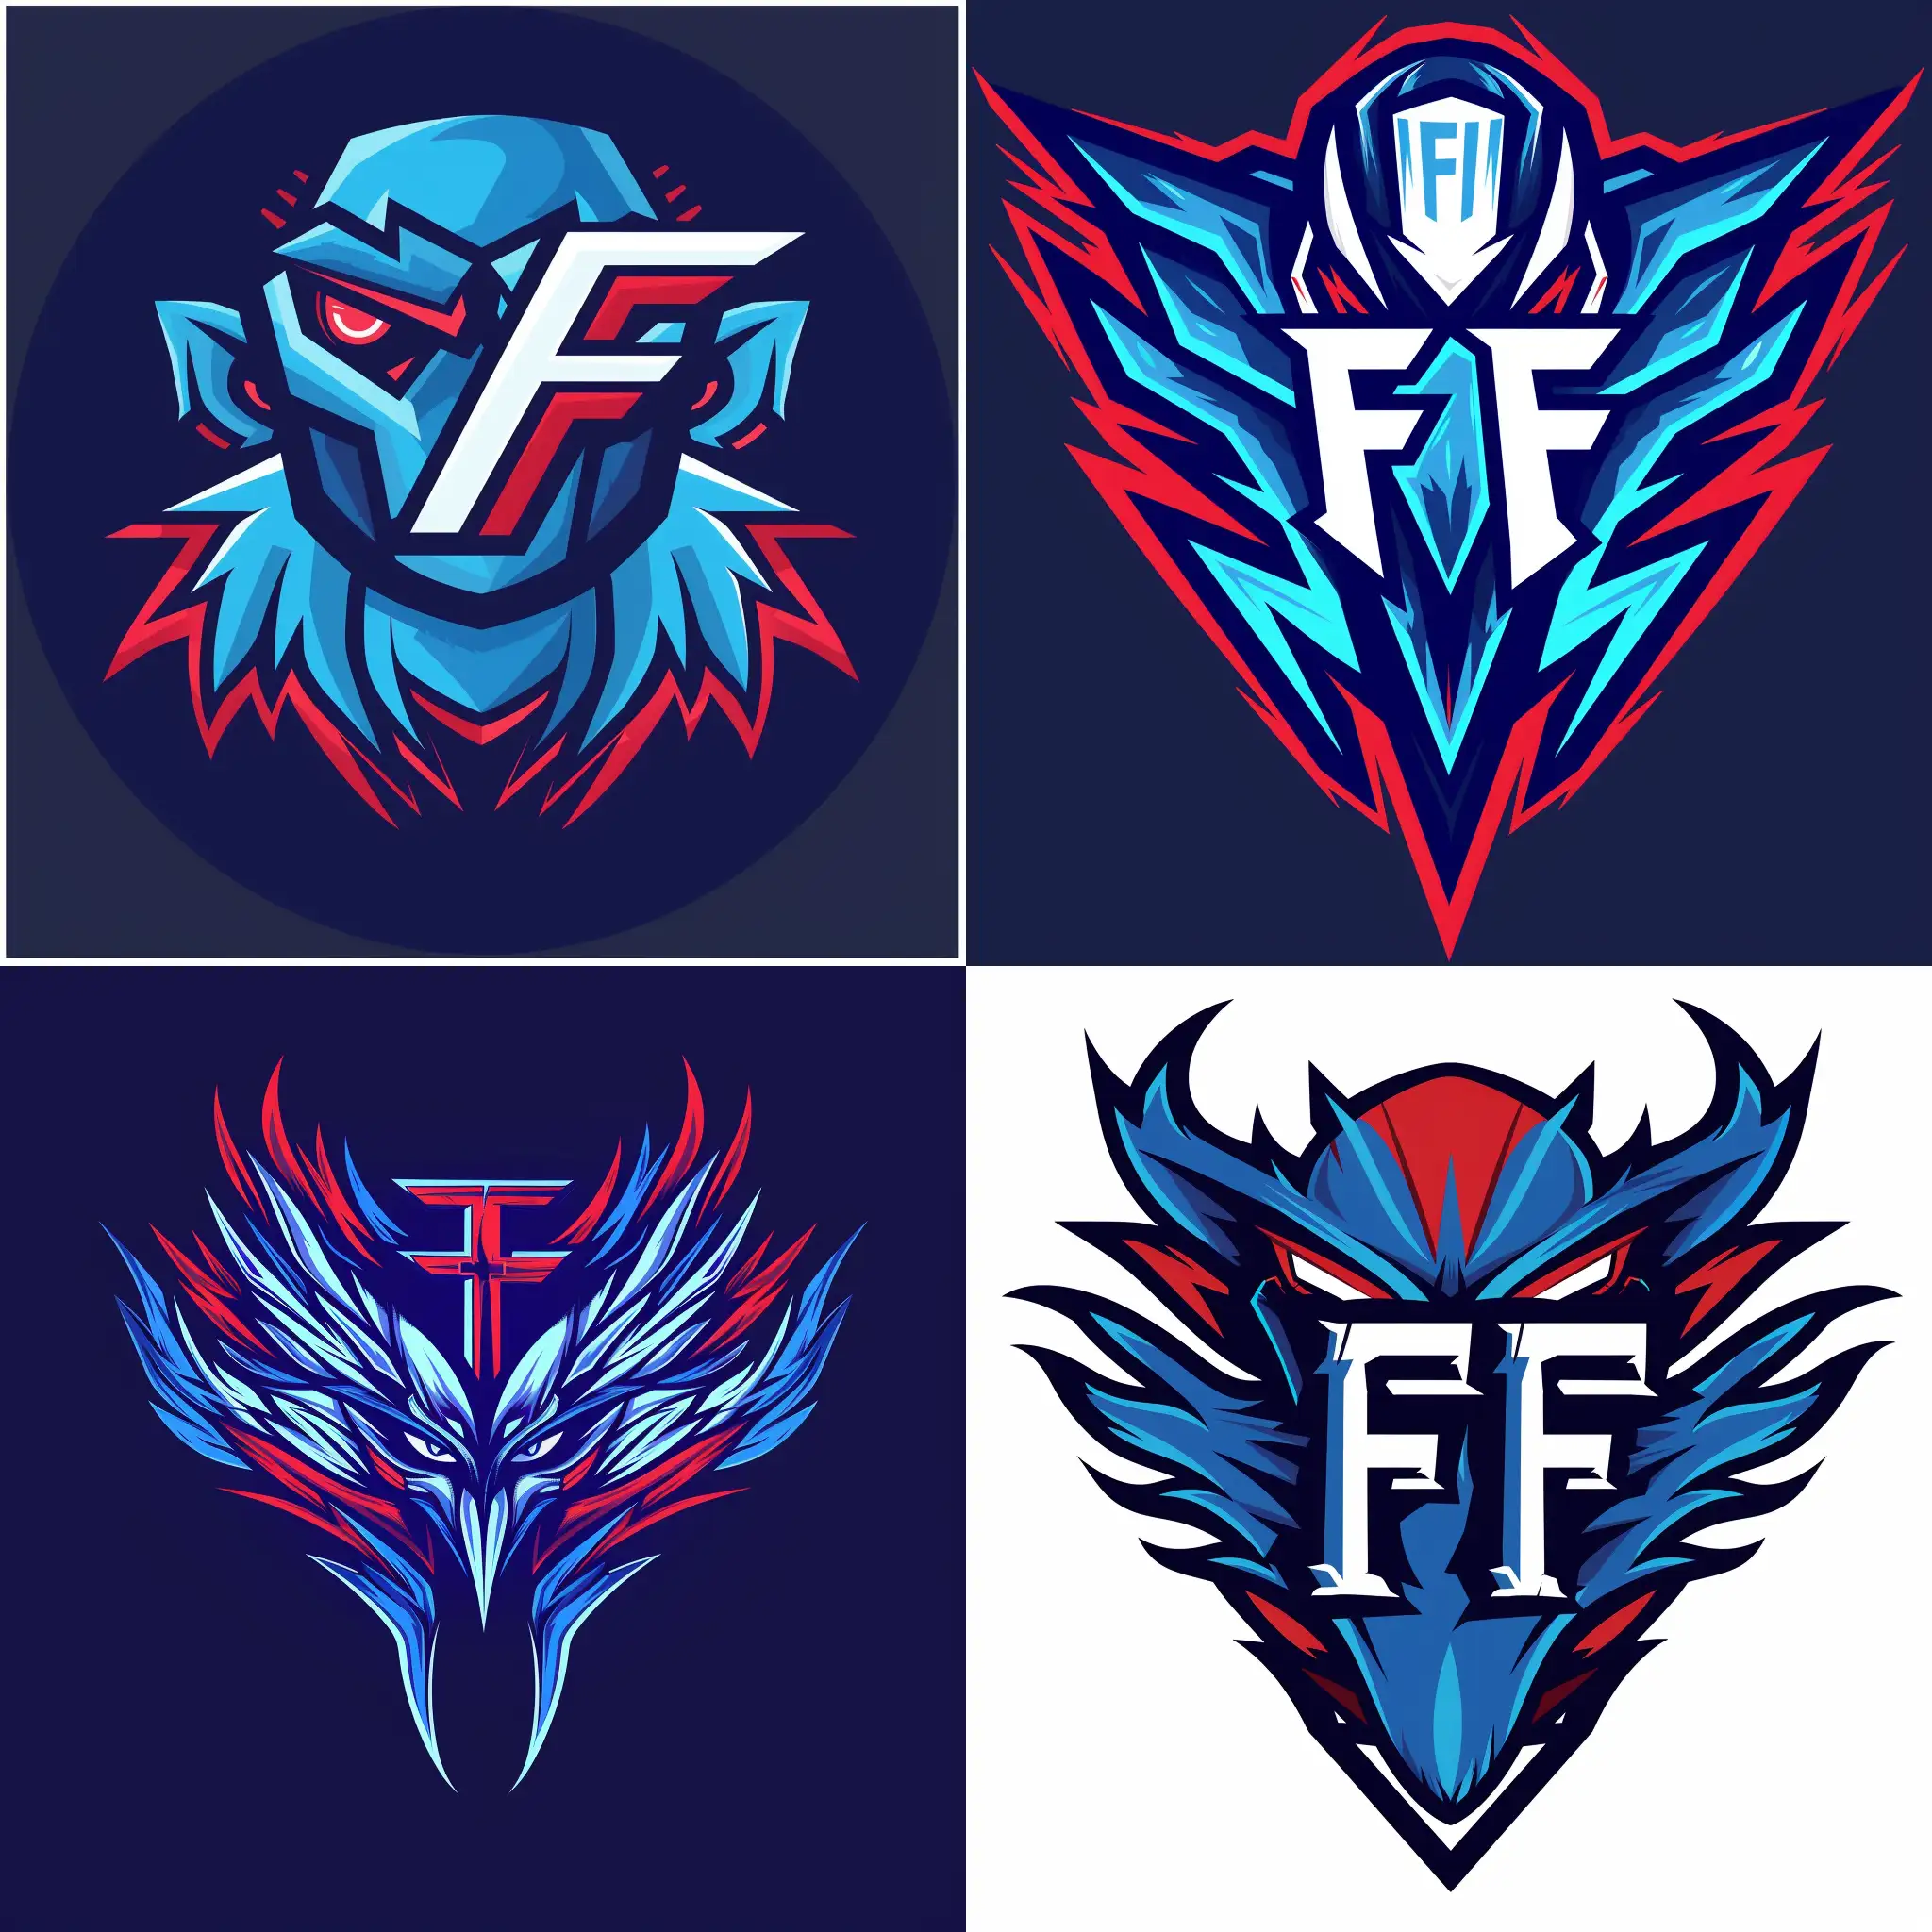 Un logo pour une team e-sport qui s'apelle "French Fiasco".
Il faut que les couleur soit bleu blanc et rouge.
Aggressif.
Il faut voir un logo "FF".
Style graphique dessin digital